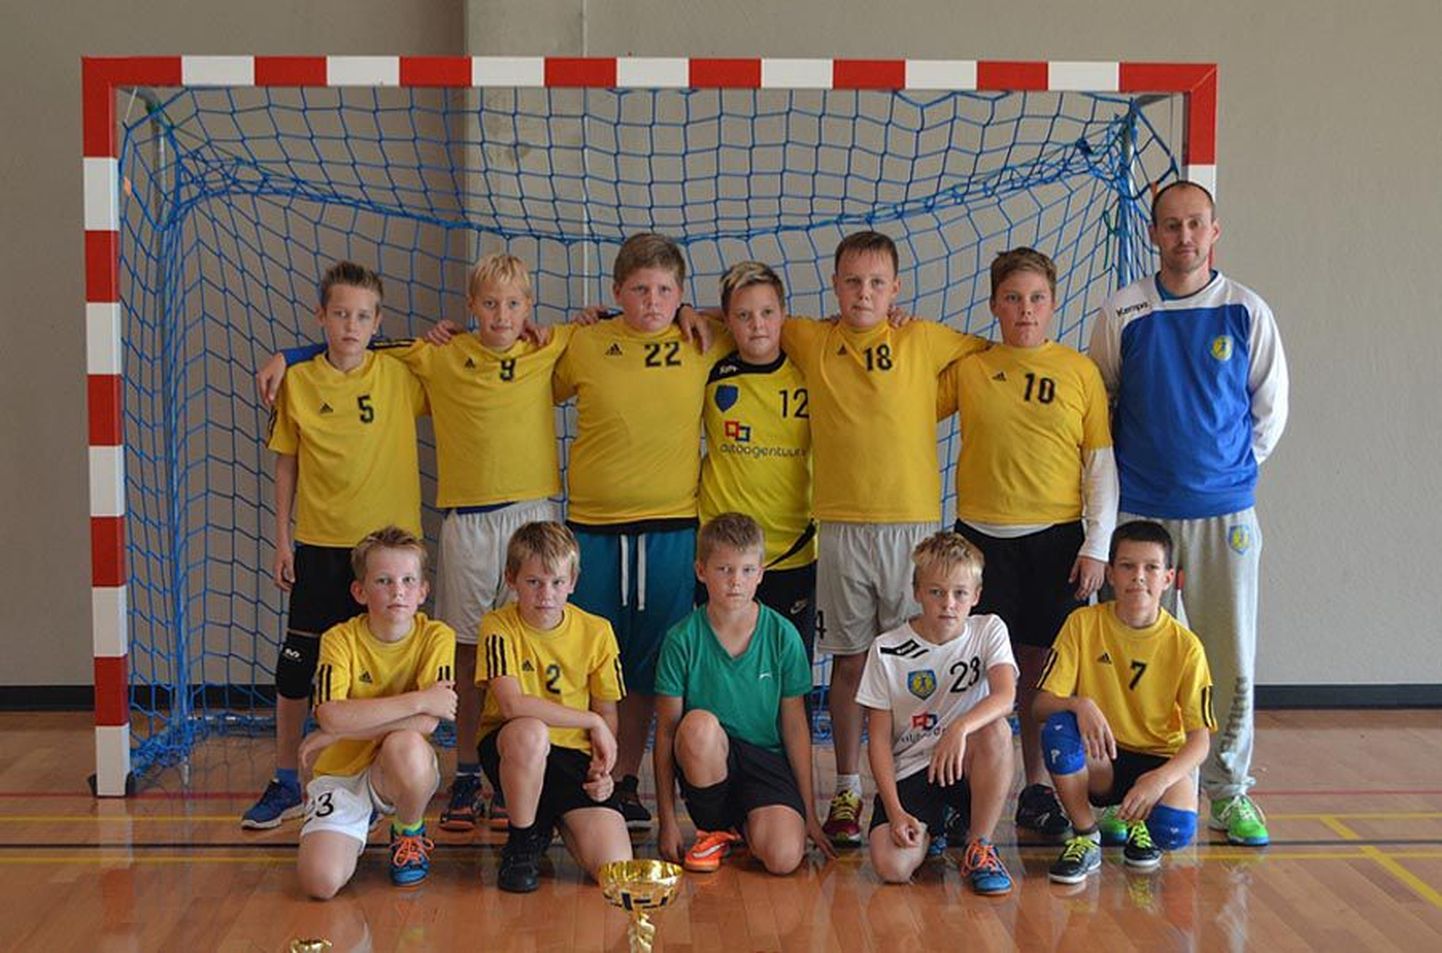 Viljandi spordikooli alla 11-aastaste käsipallimeeskond saavutas treener 
Marko Koksi juhendamisel Eesti karikavõistlustel esikoha.